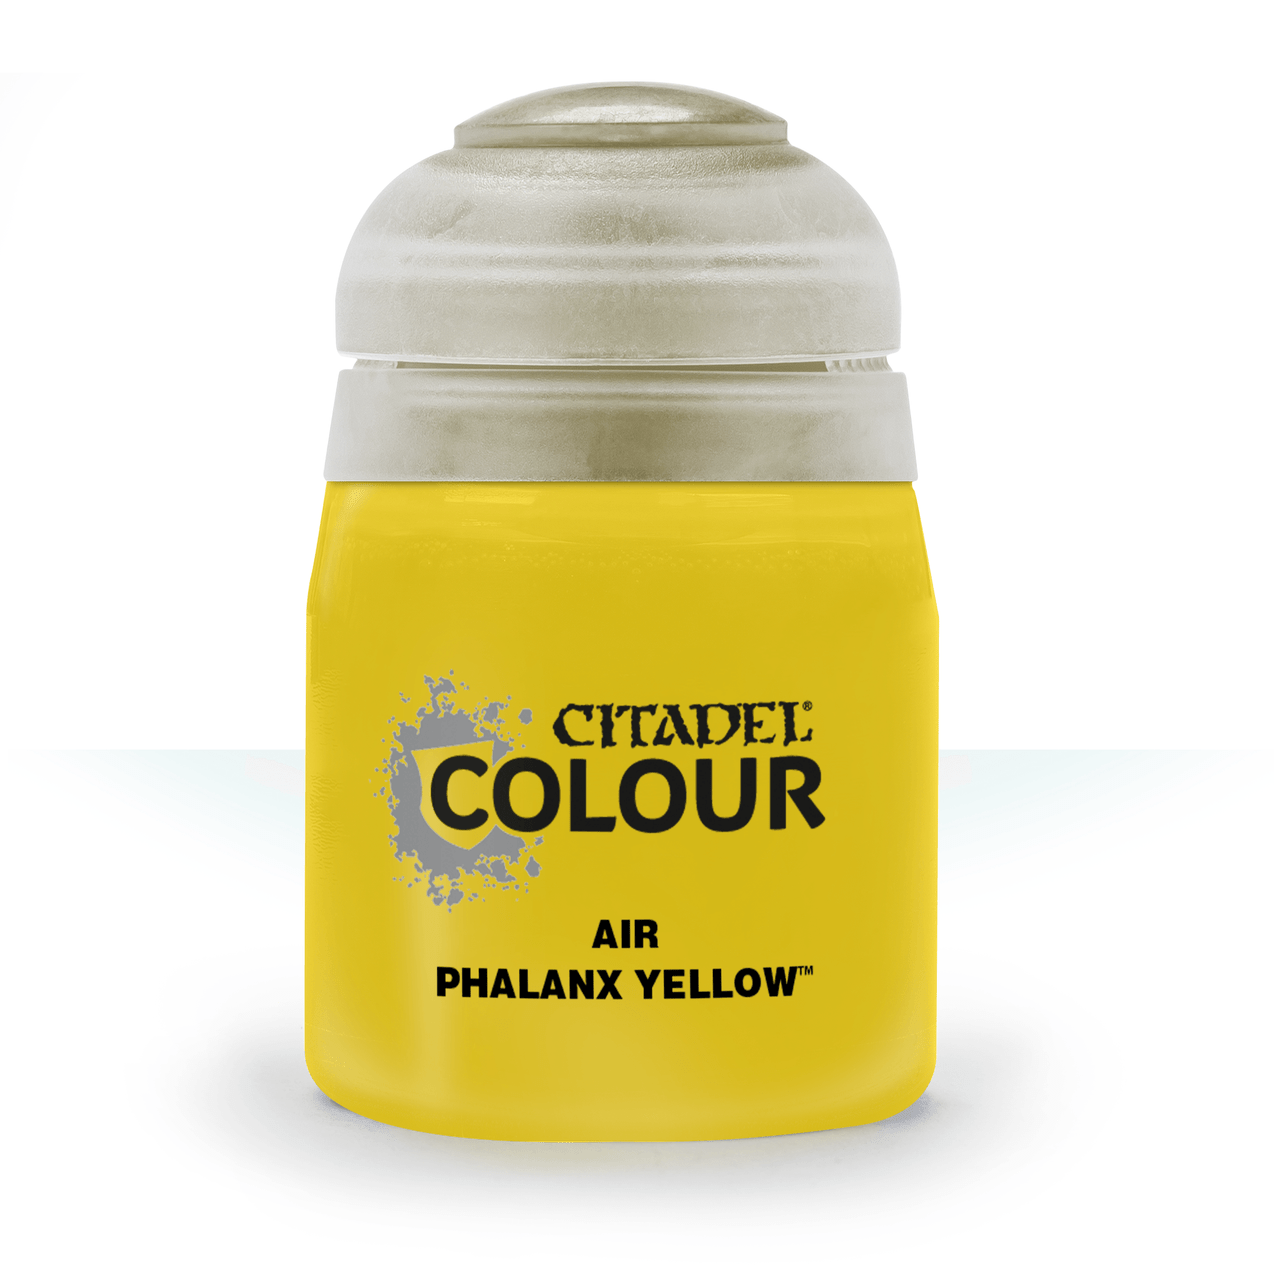 Citadel Air: Phalanx Yellow